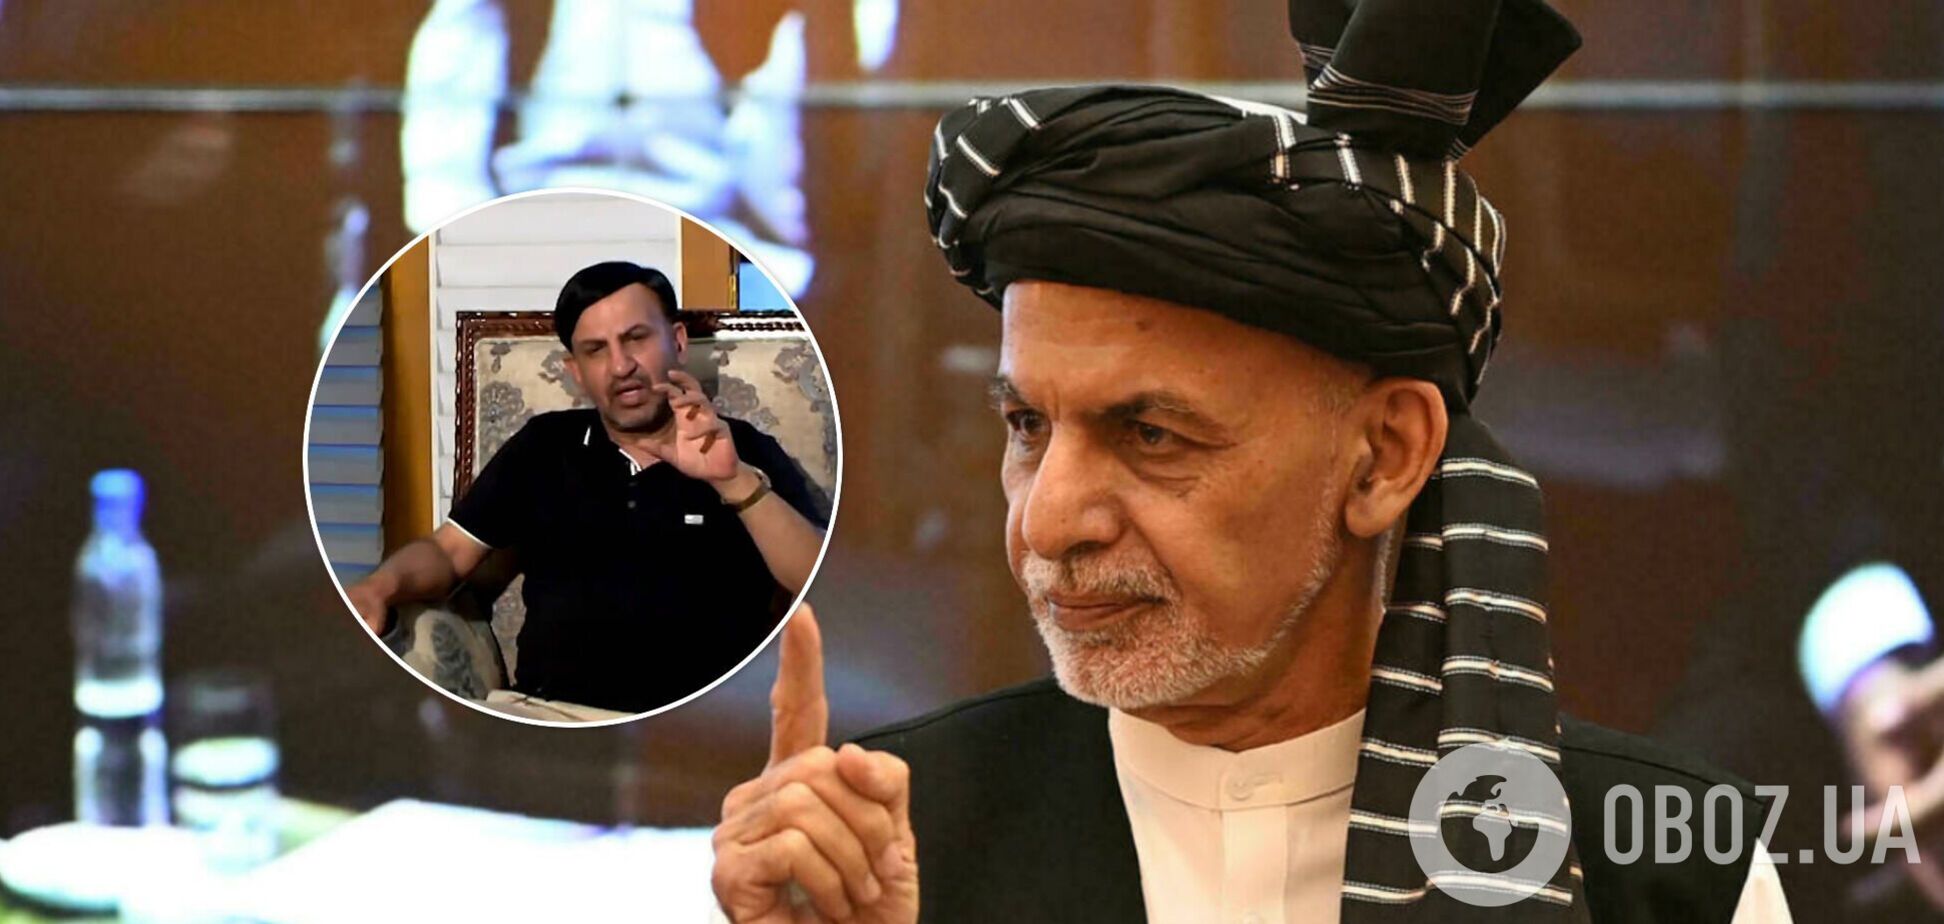 Талибы заявили, что к ним присоединился брат сбежавшего президента Афганистана. Видео